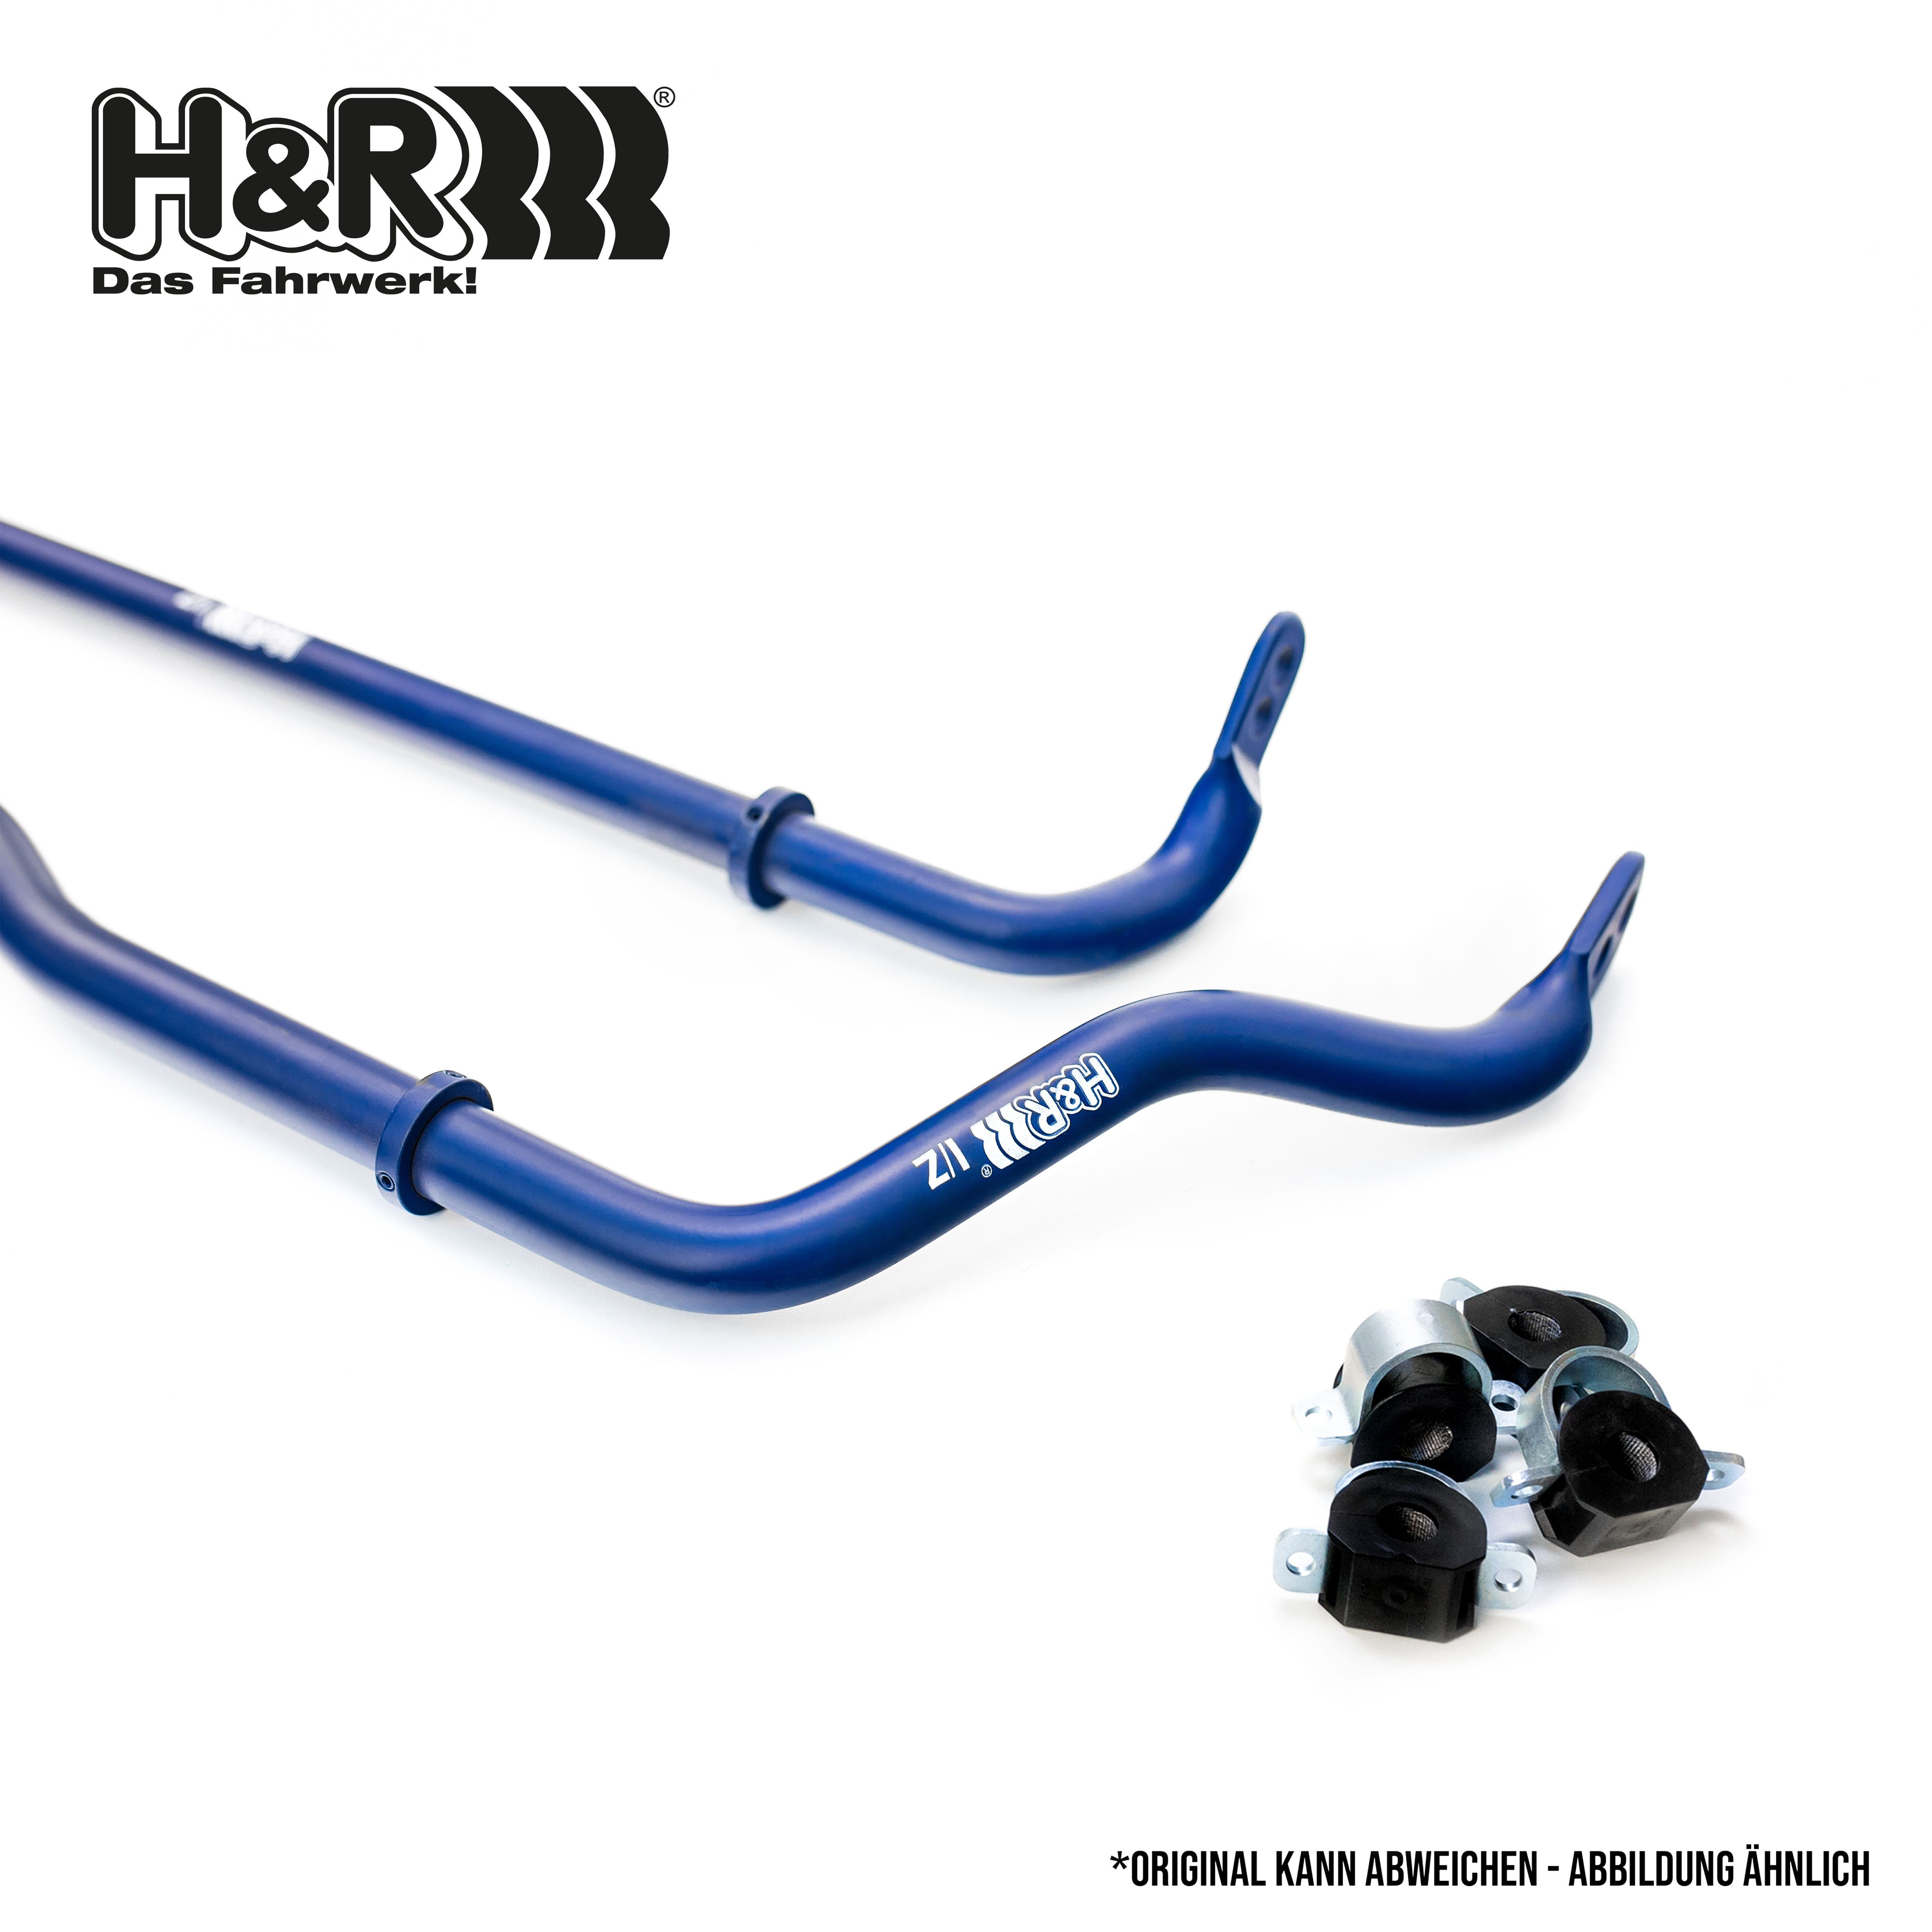 H&R Stabiliser Set 33325-6 buy